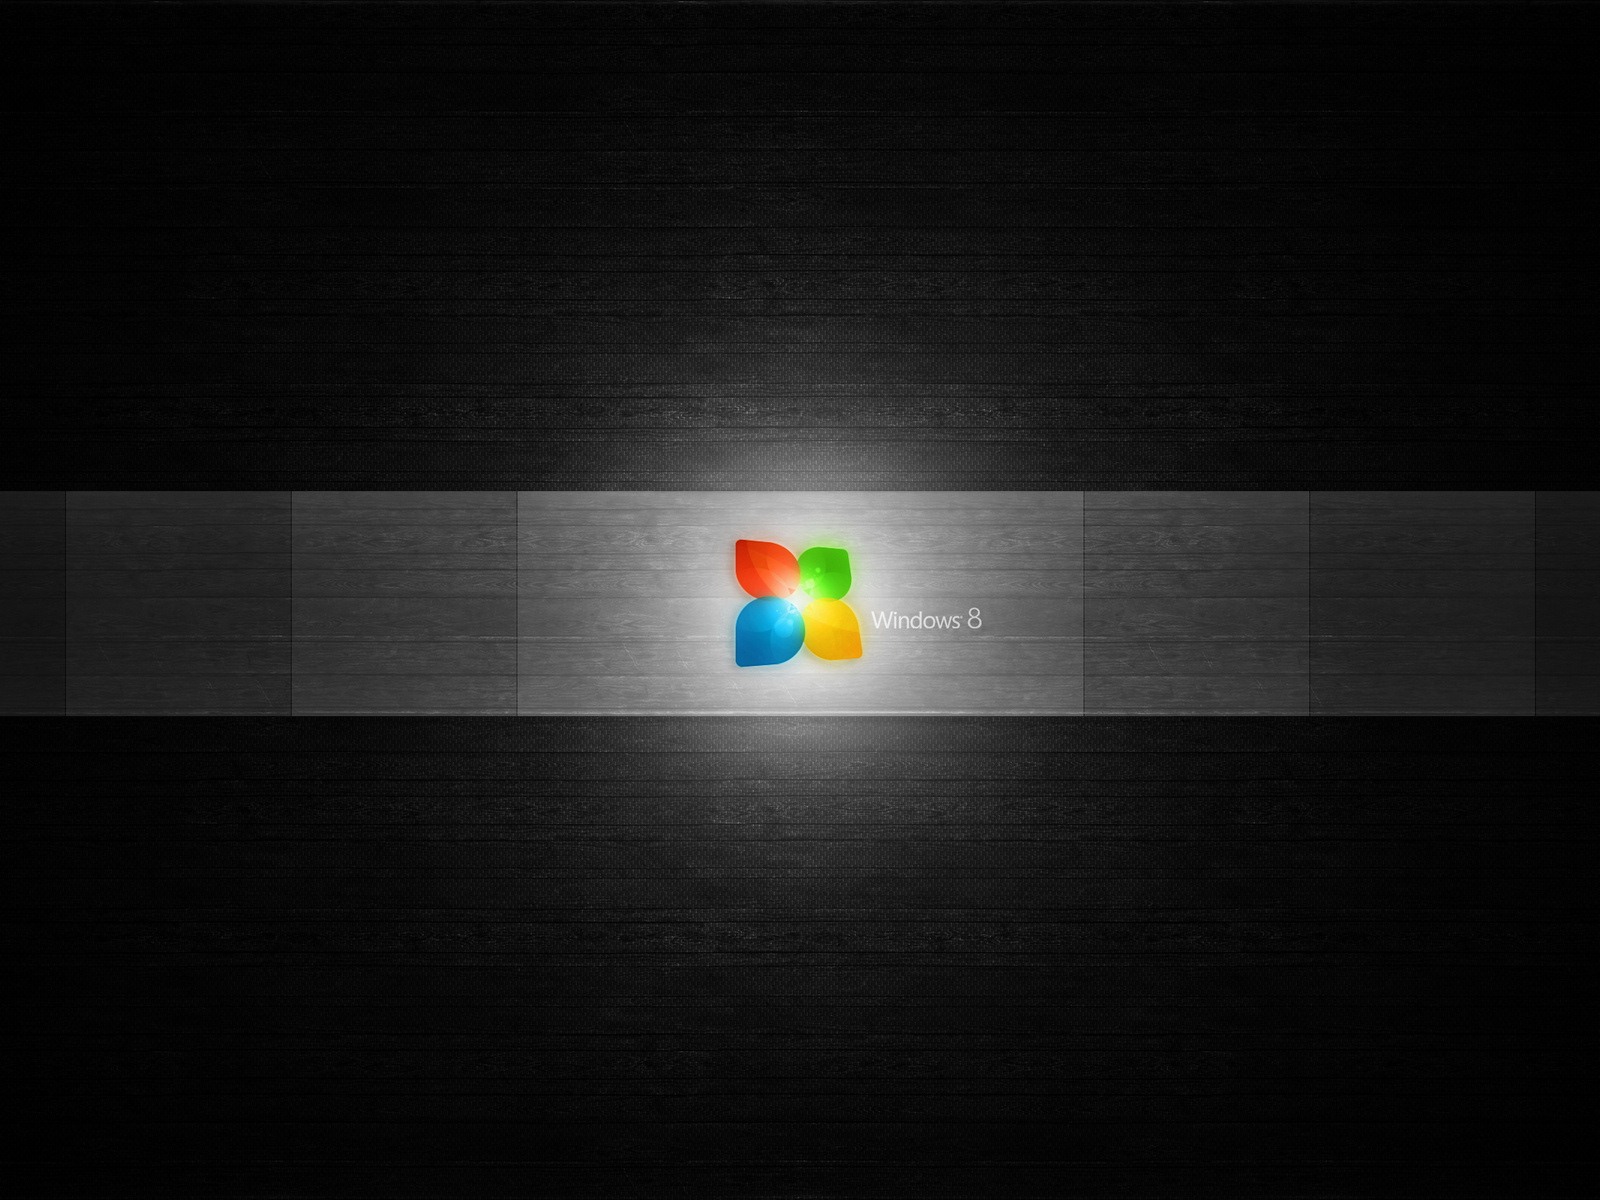 Windows 8 theme wallpaper (1) #7 - 1600x1200